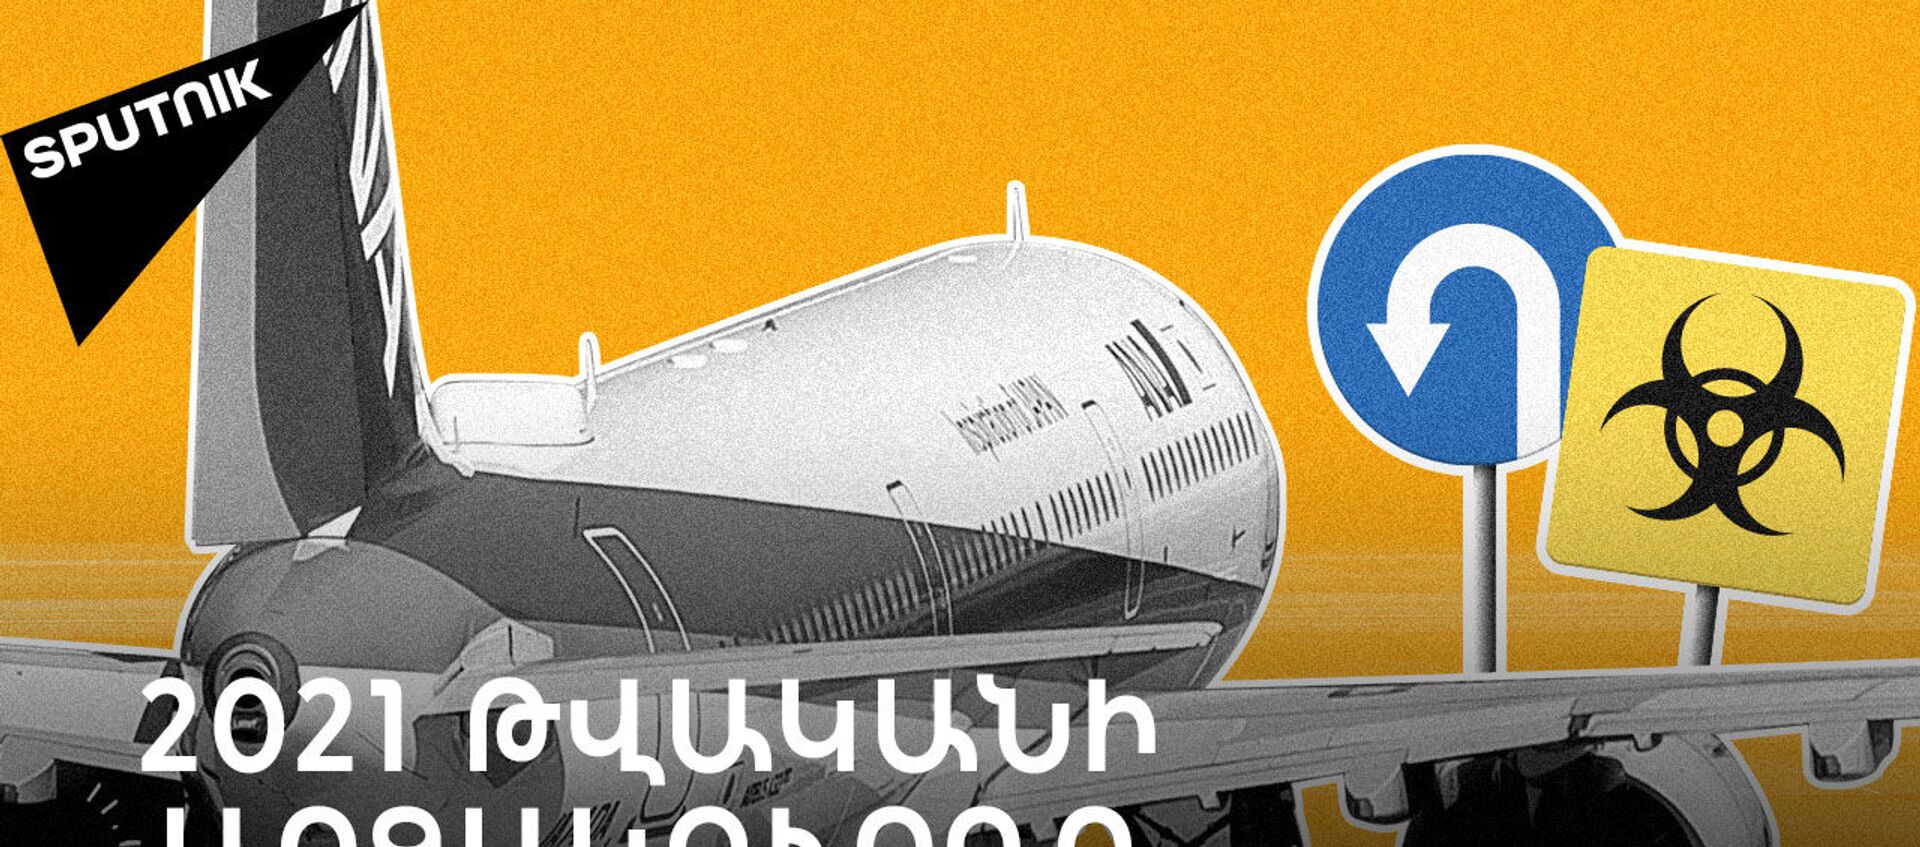 Ռուսաստանը փակում  է Թուրքիայի օդը. ի՞նչ է լինելու 2021 թվականի զբոսաշրջային սեզոնի հետ - Sputnik Արմենիա, 1920, 14.04.2021